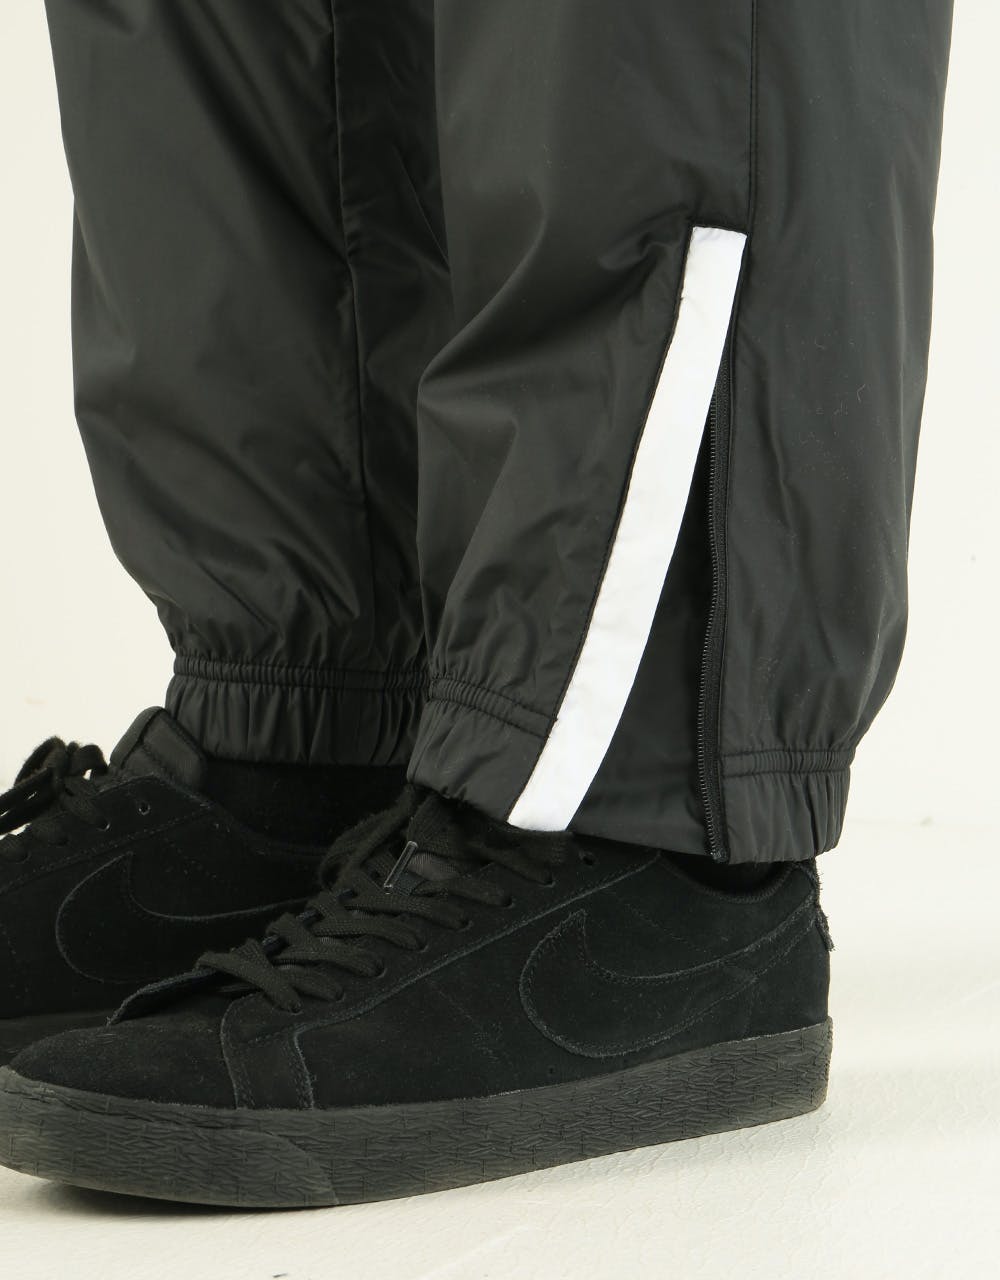 Nike SB Shield Mens Swoosh Skate Track Pants CI1990-402 Size L